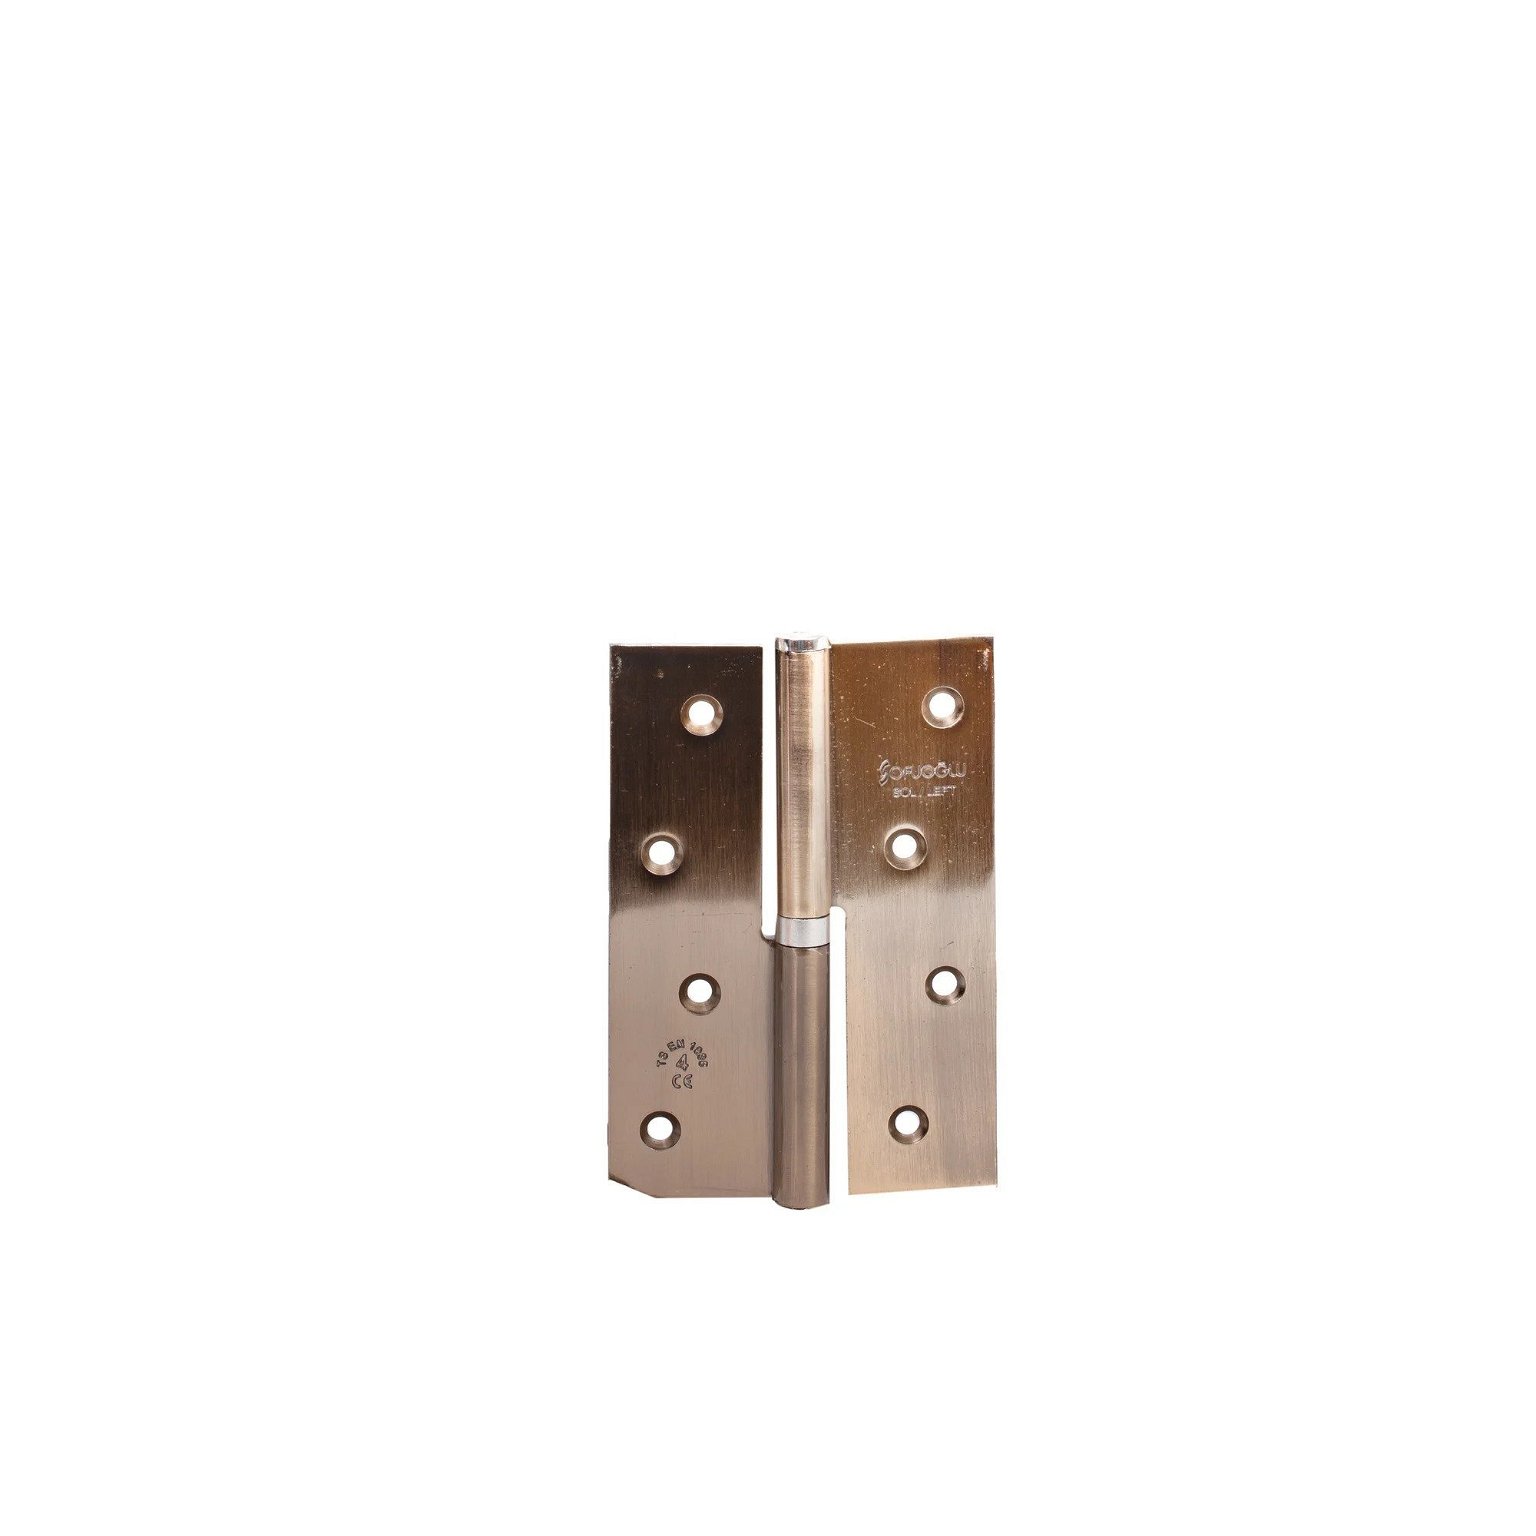 Durų lankstas 184, 120 x 82 x 2,5 mm, dešininis, durims be užlaidos, bronzinės sp.